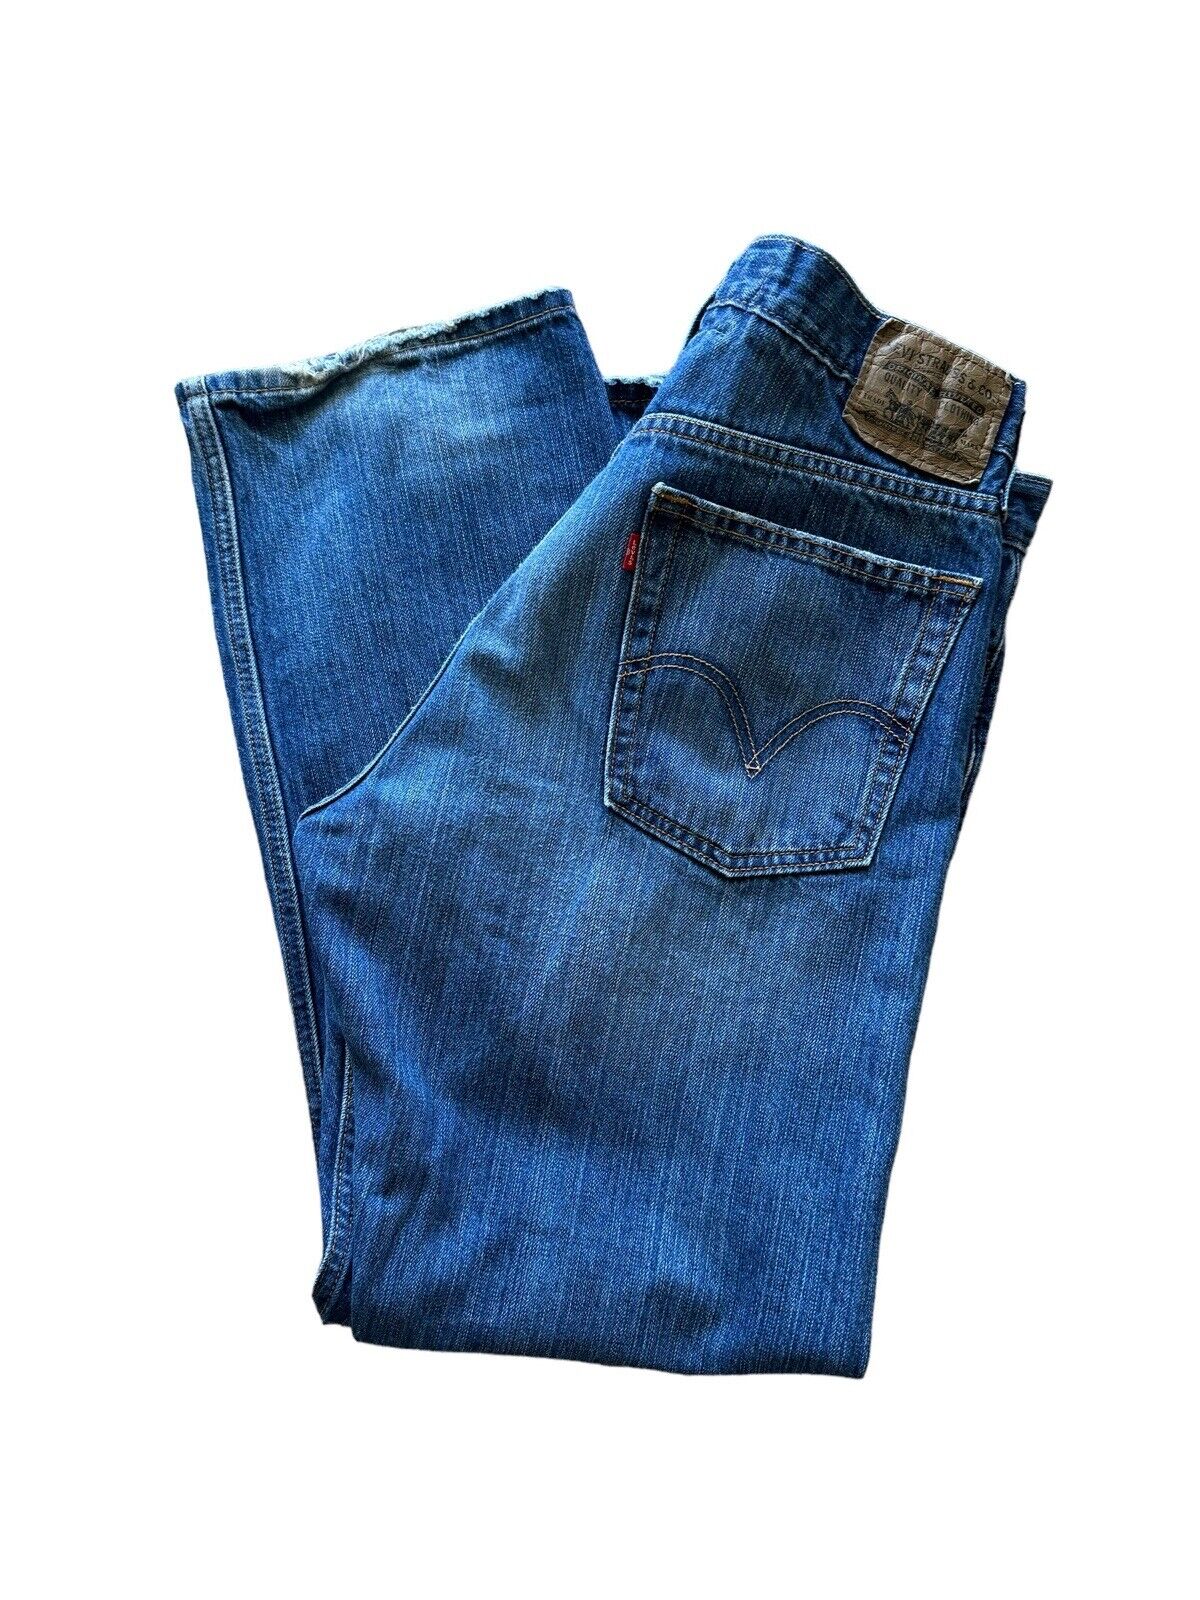 Levi’s The Original Jeans Slim Straight 514 Blue Jeans Men’s Size 36x30 Vintage